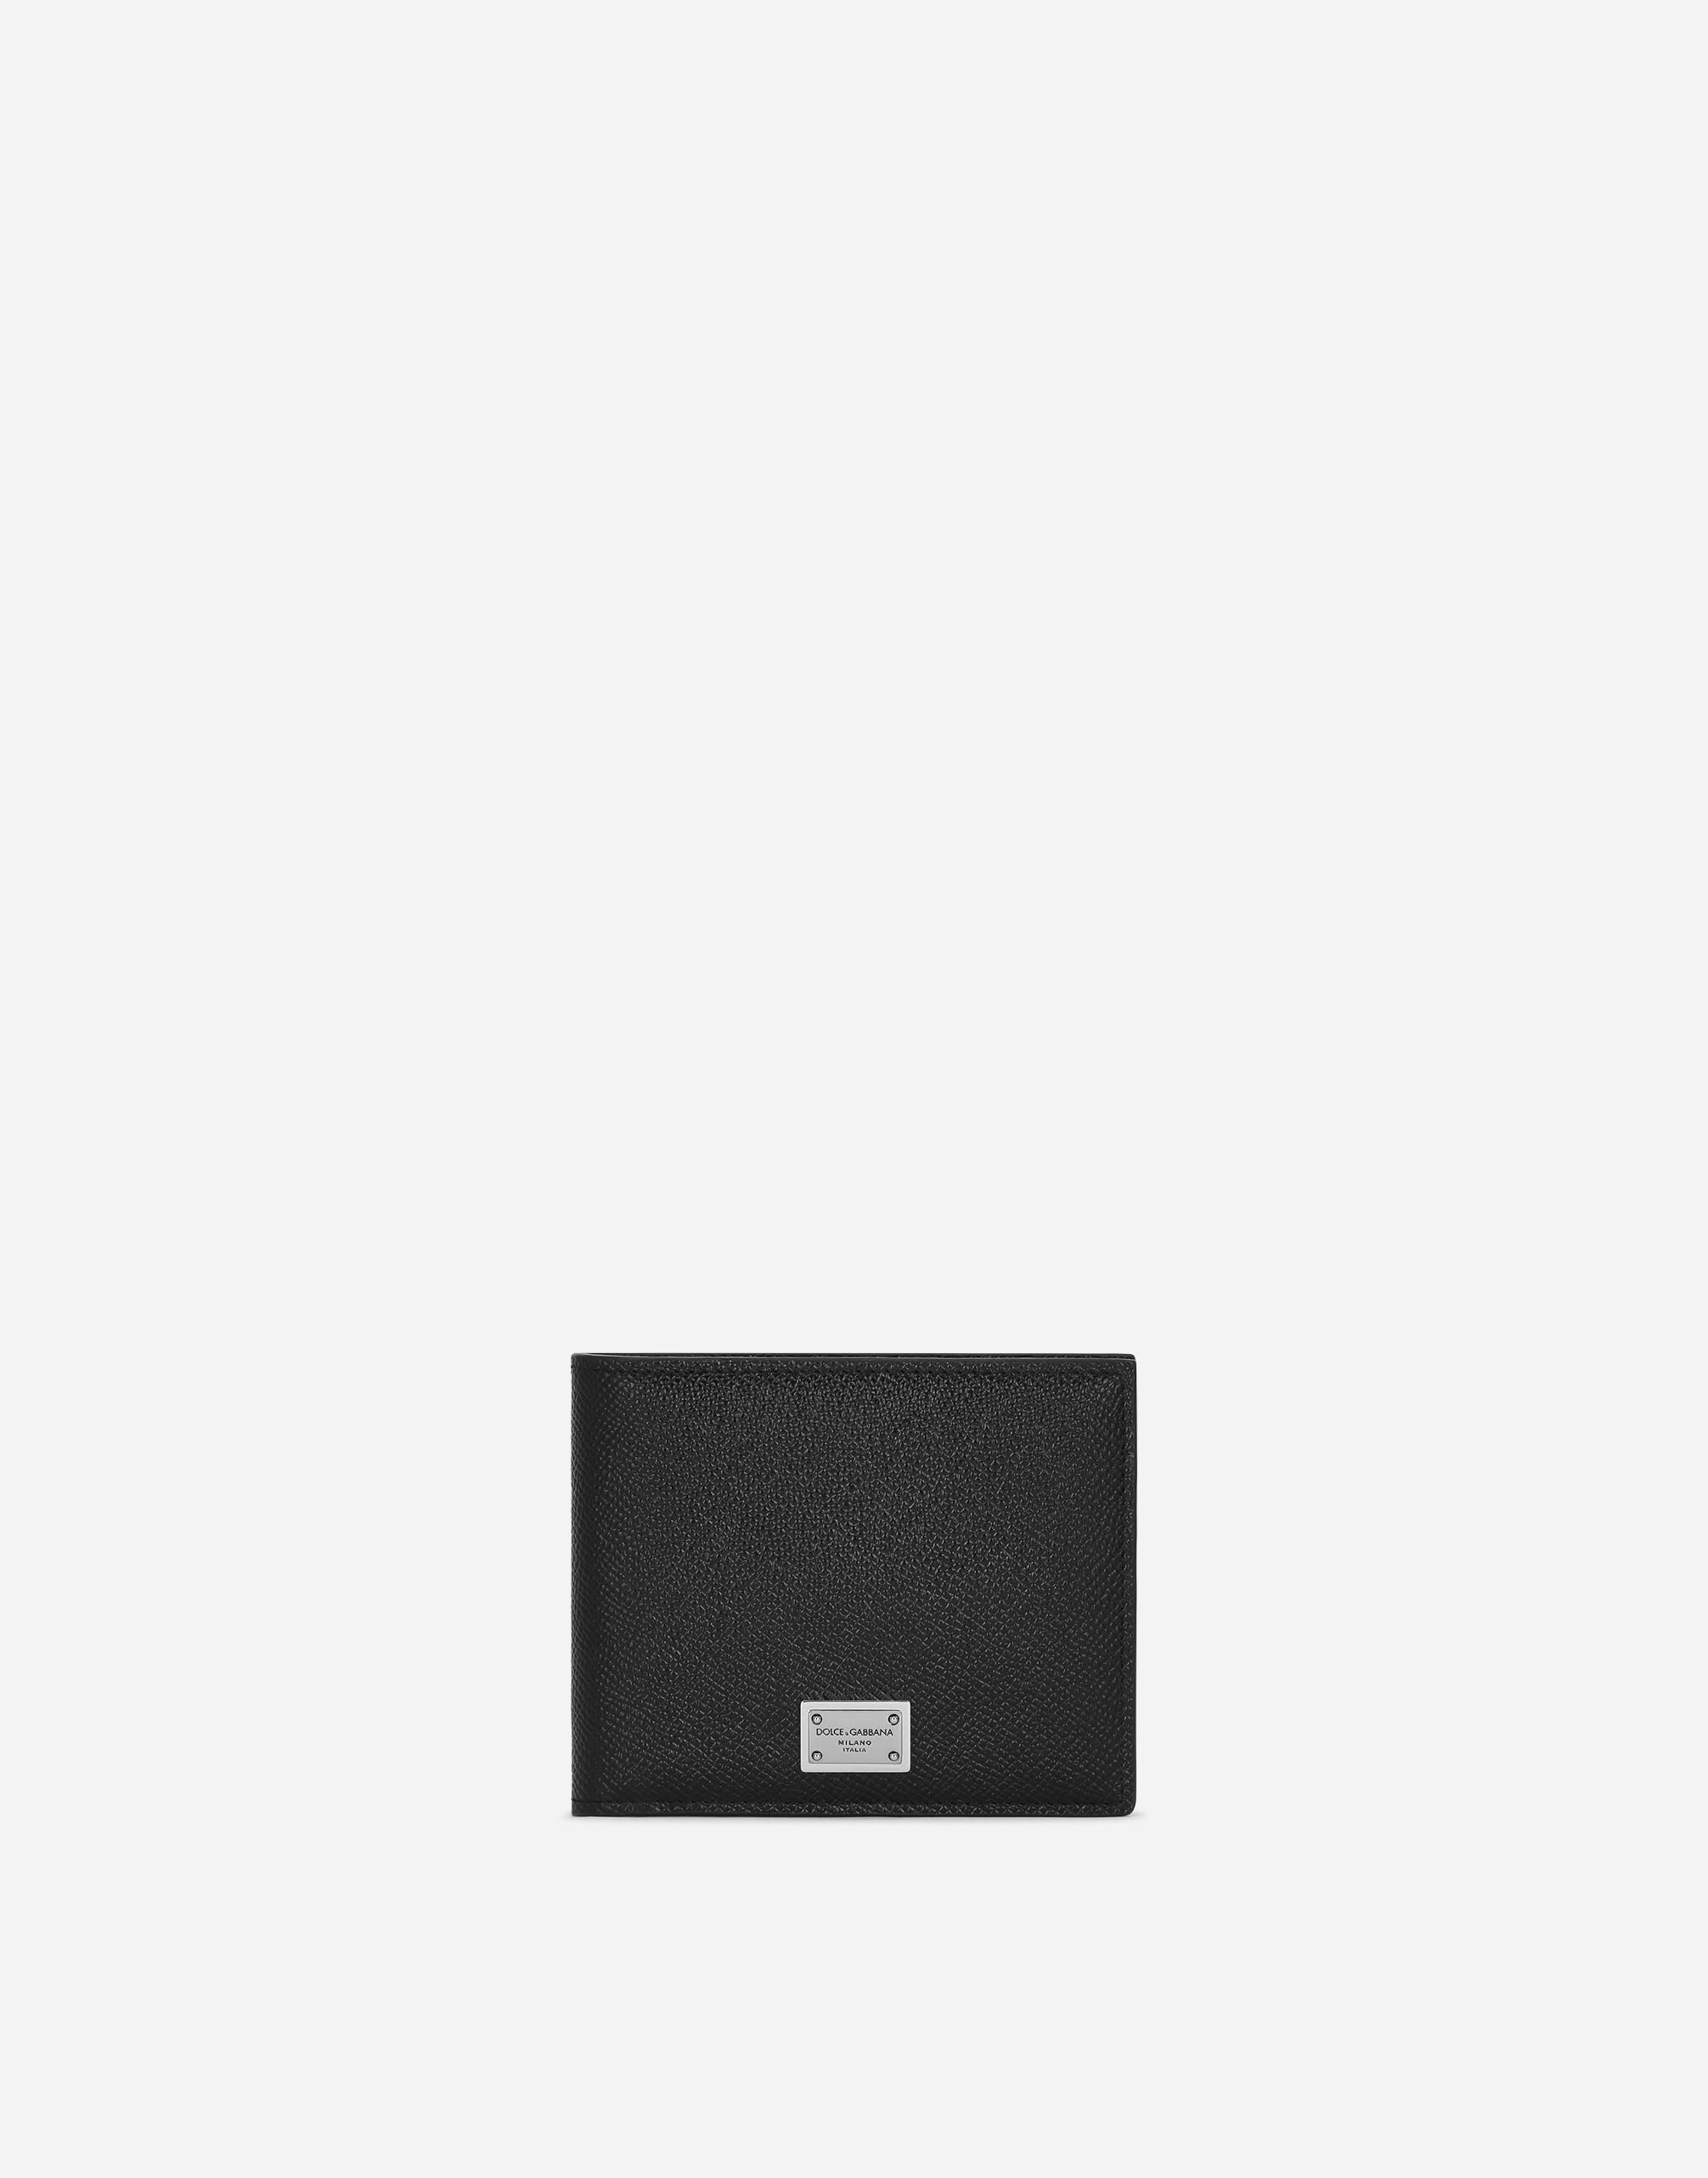 Dolce & Gabbana Calfskin wallet with coin pocket and logo tag Grey BP0330AT489